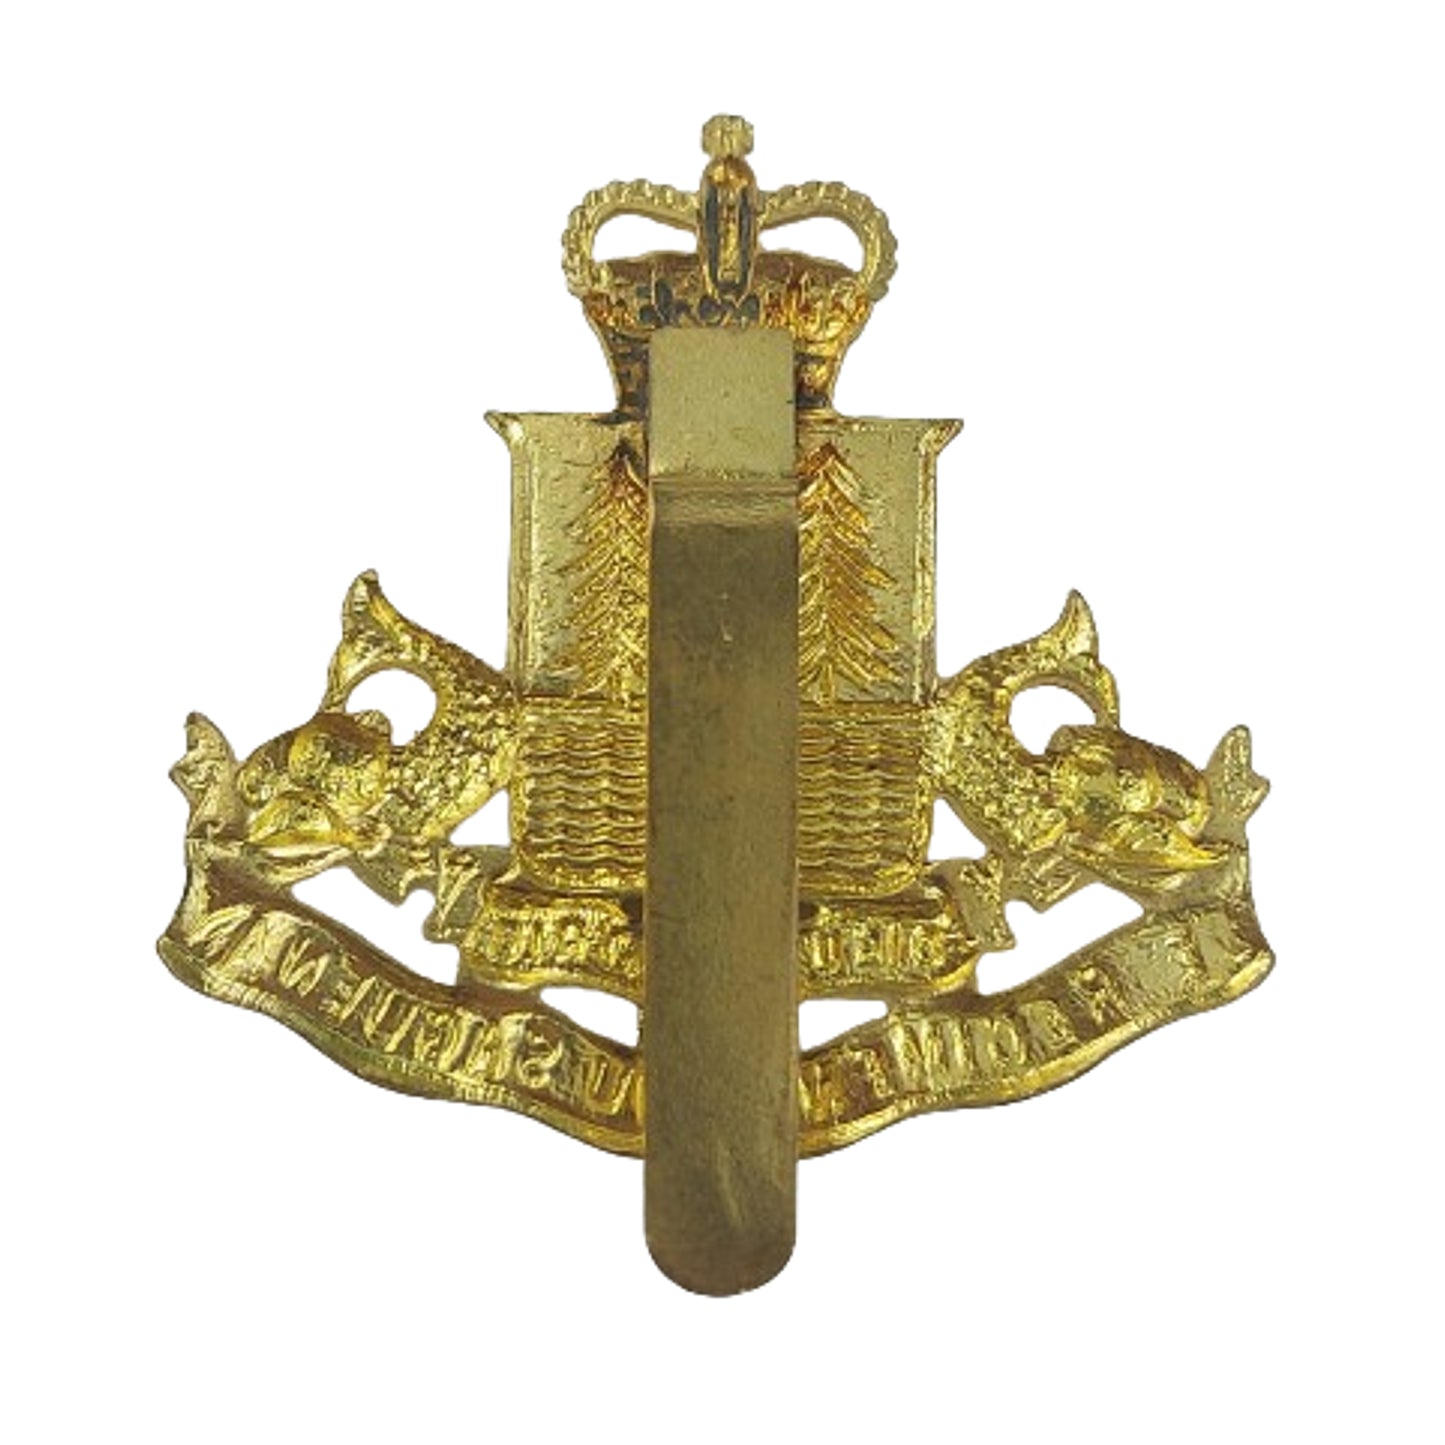 QEII Canadian Regiment De Saguena Cap Badge